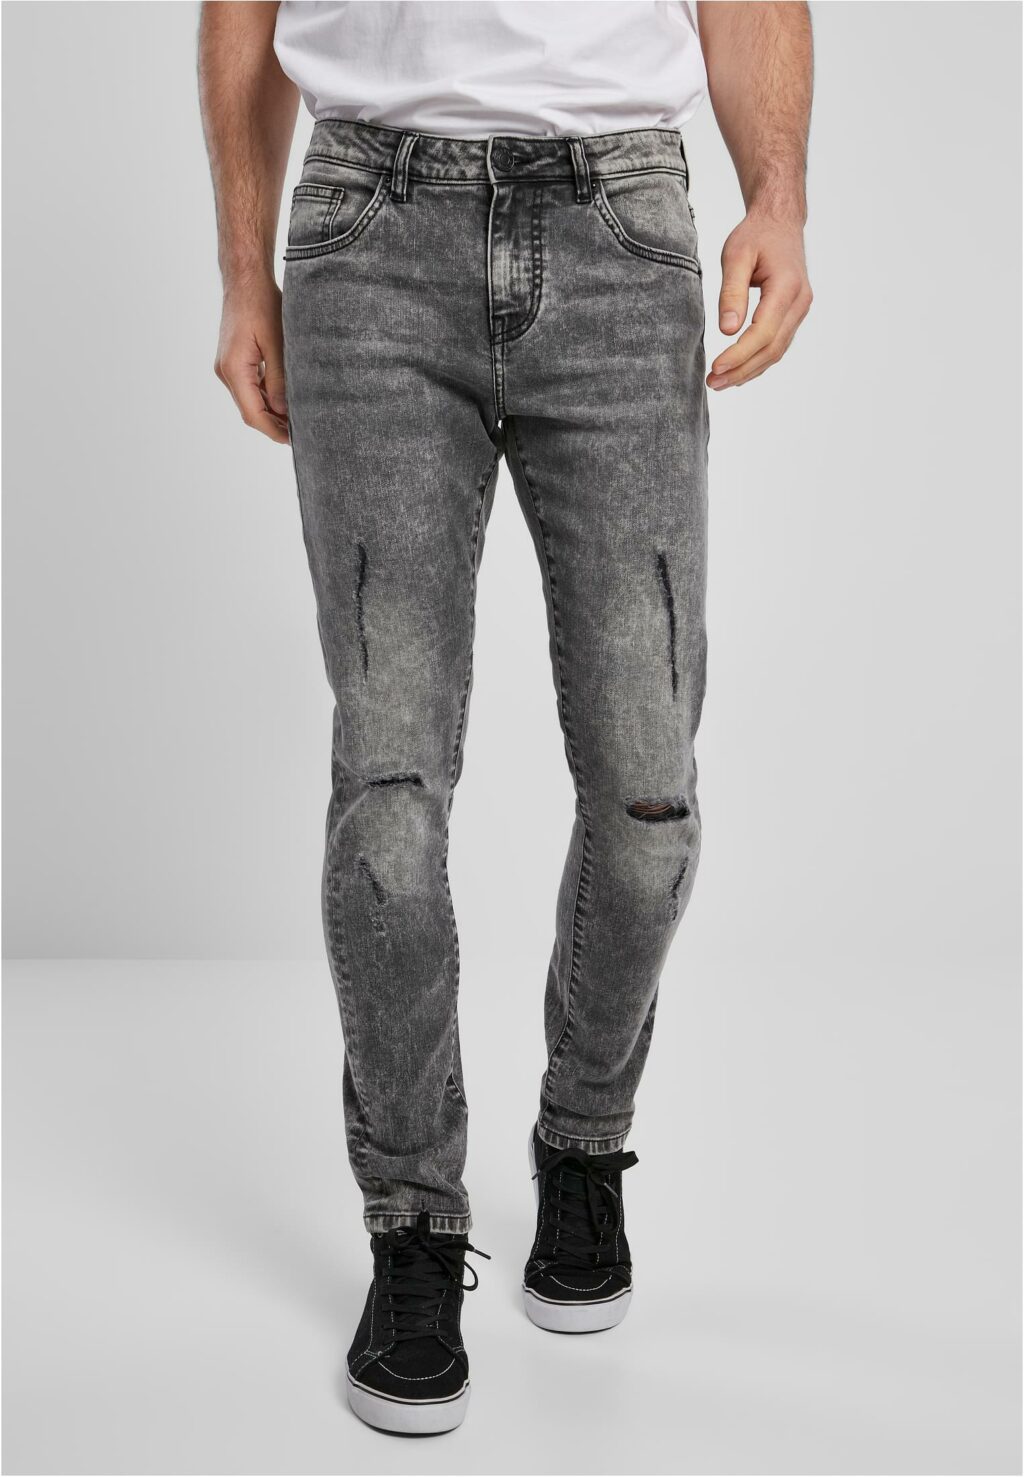 Urban Classics Slim Fit Jeans black stone washed TB3076